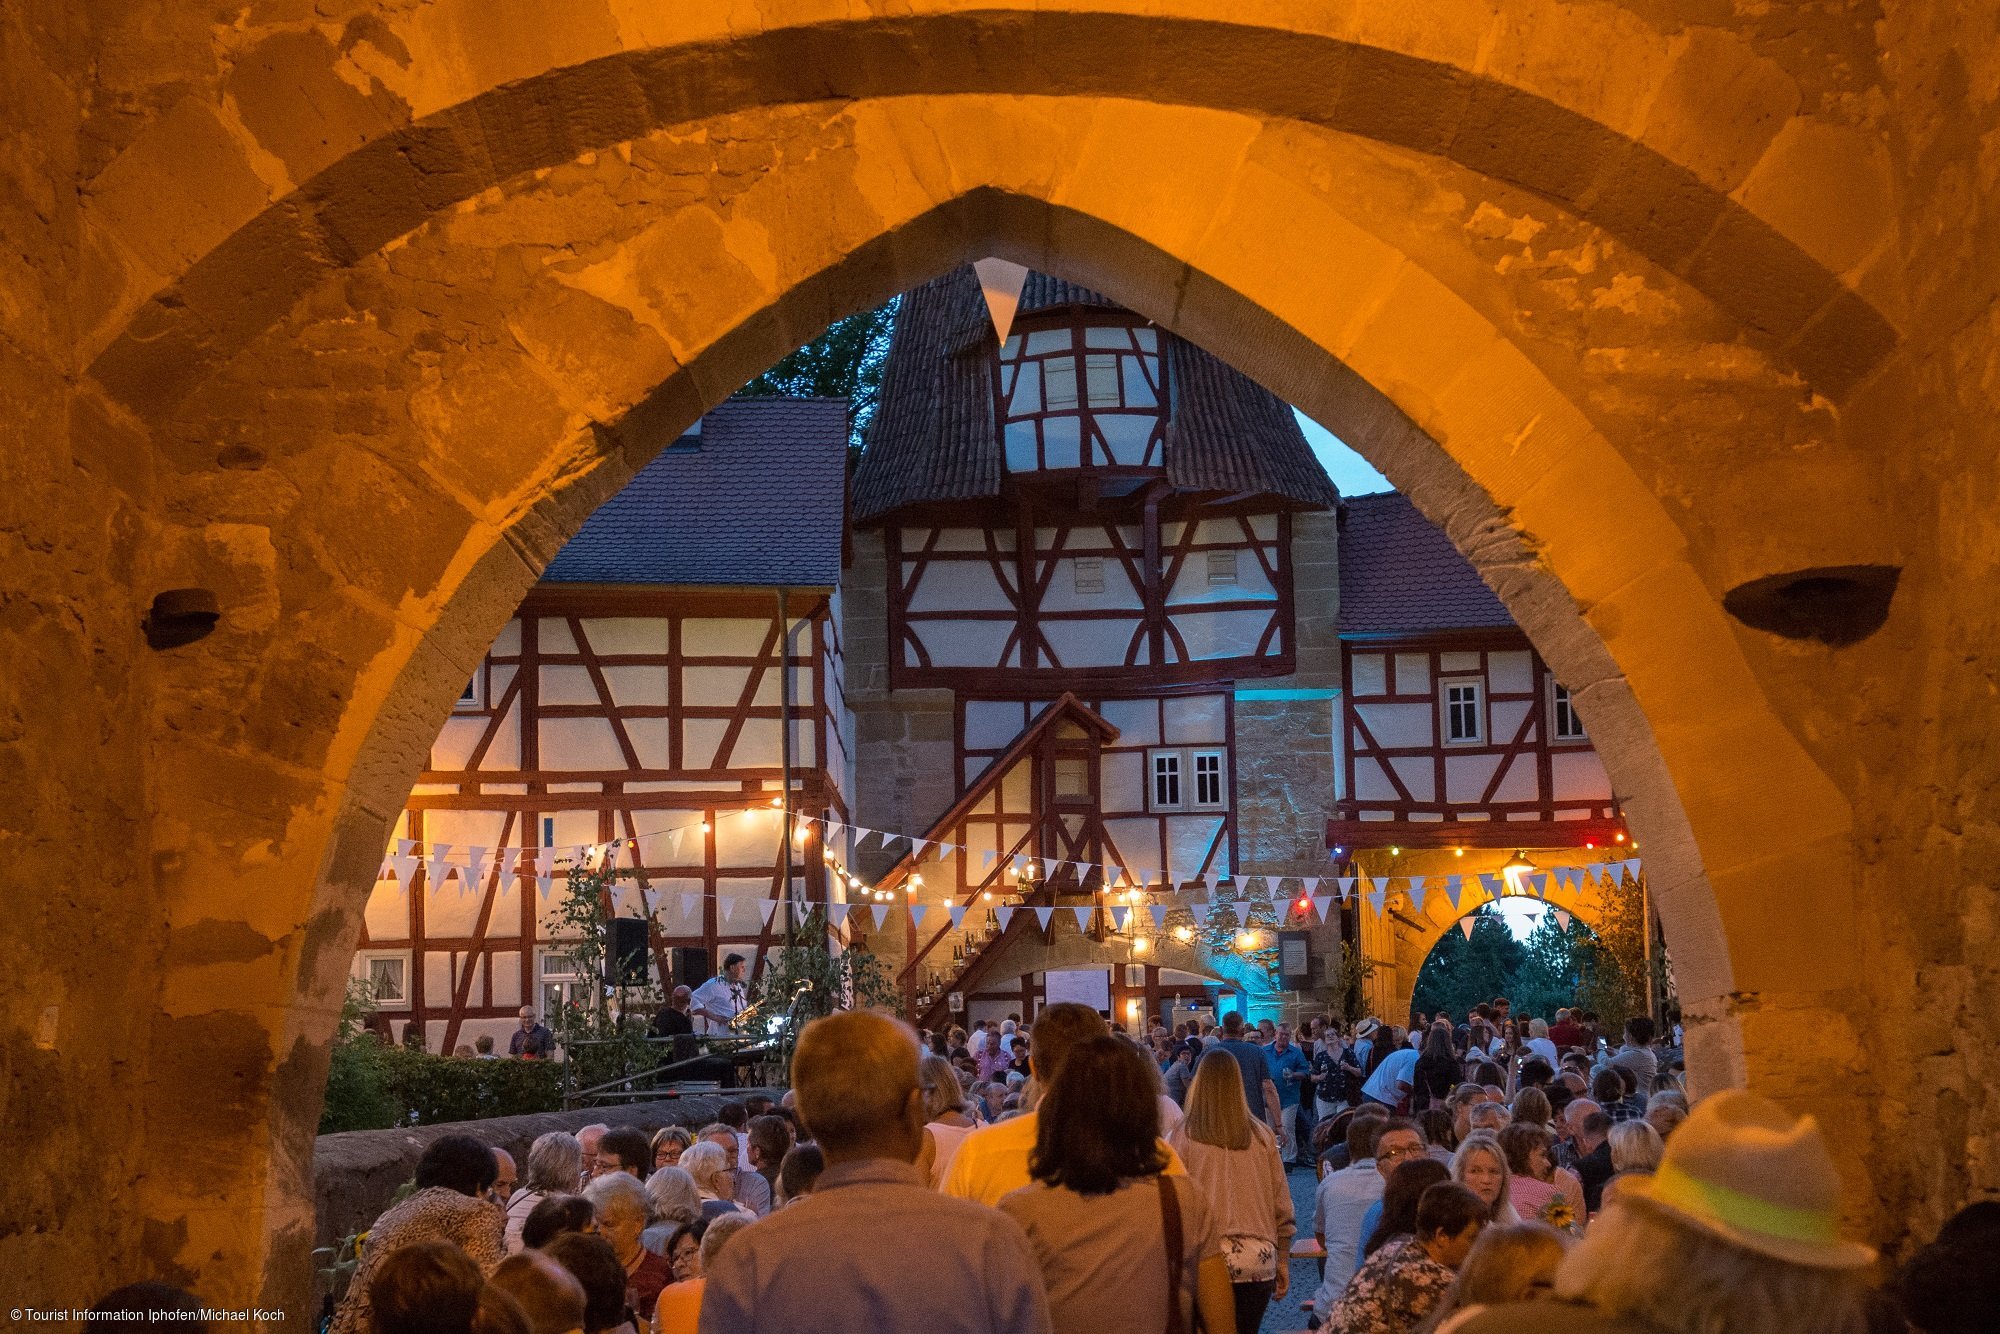 Weinfest am Rödelseer Tor (Iphofen, Fränkisches Weinland)